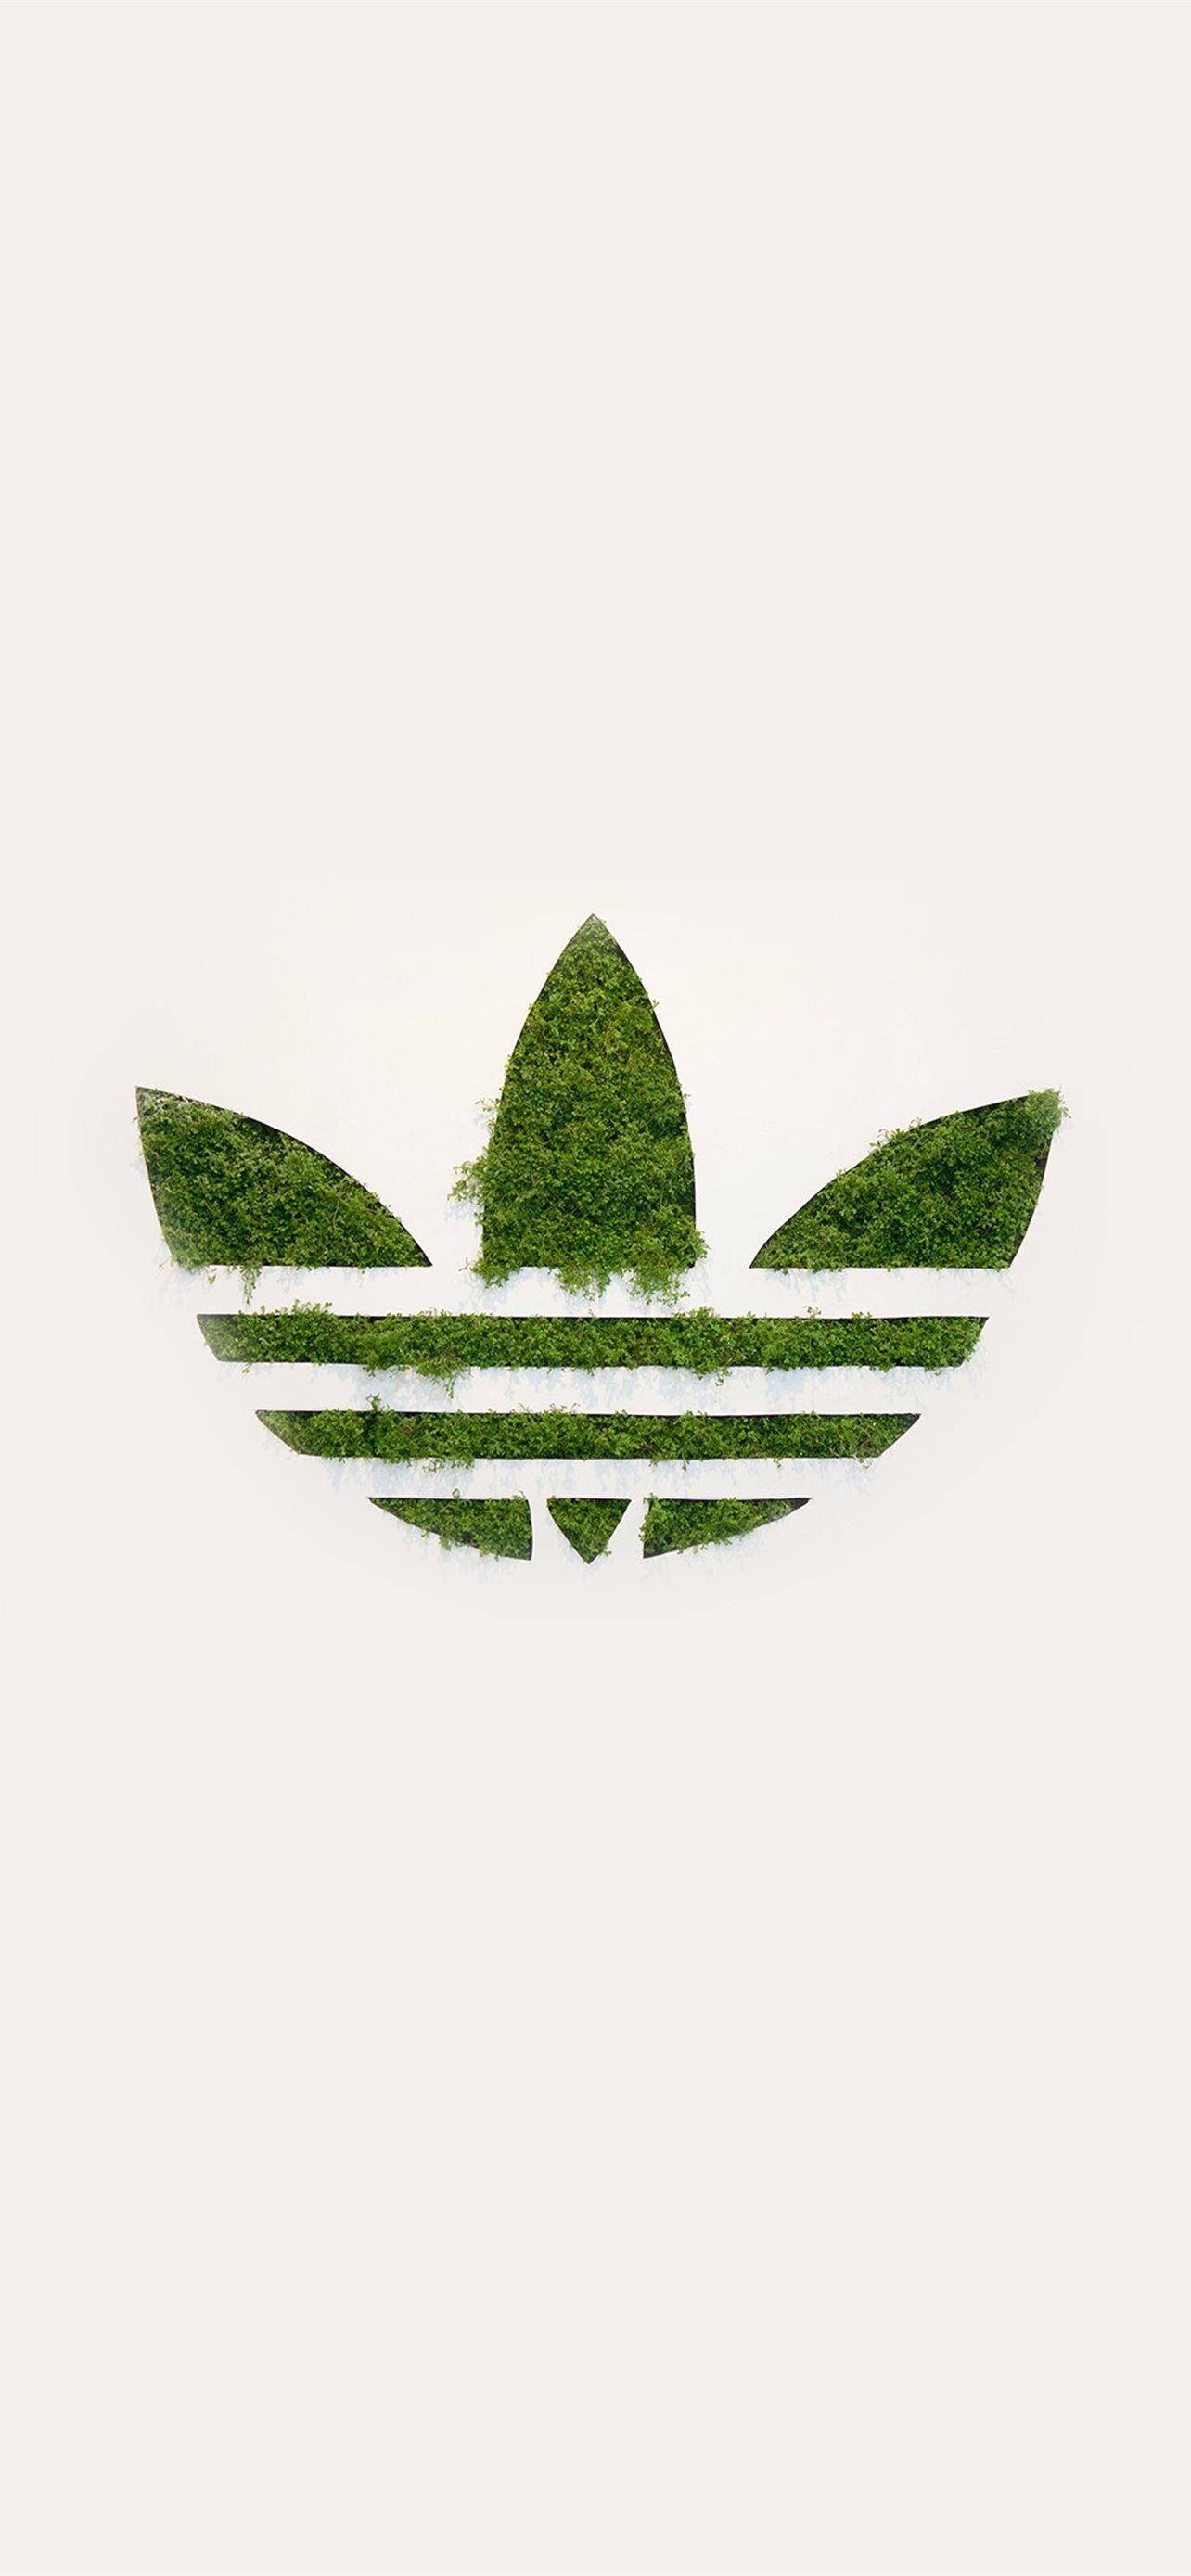 Hình ảnh logo Adidas